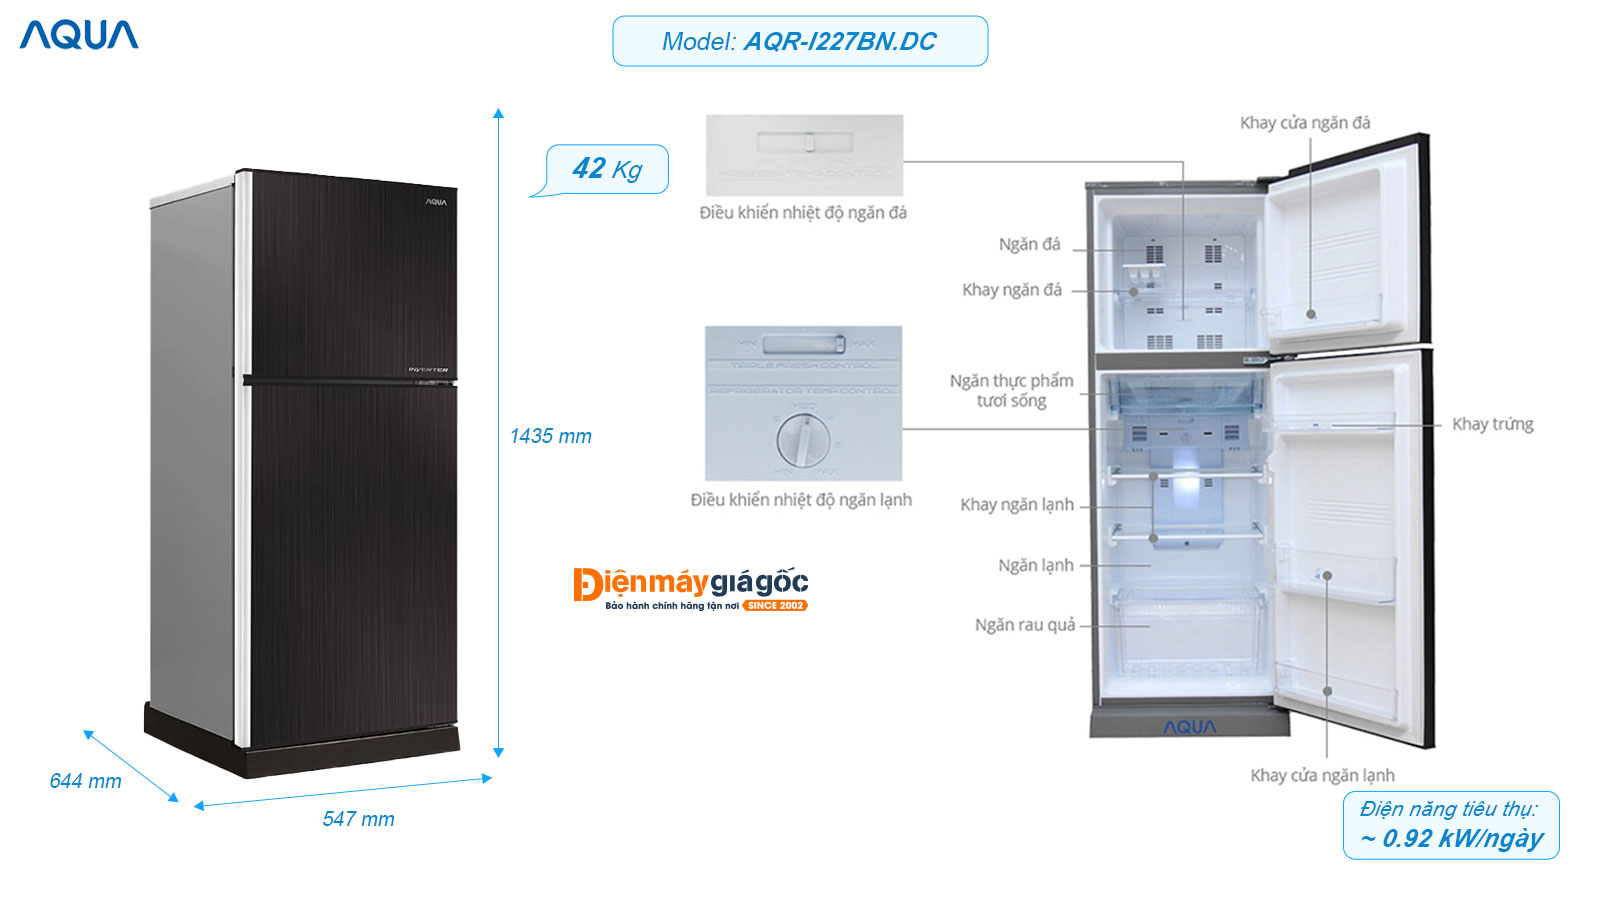 Tủ lạnh Aqua ngăn đá trên 2 cửa Inverter 204 lít AQR-I227BN.DC